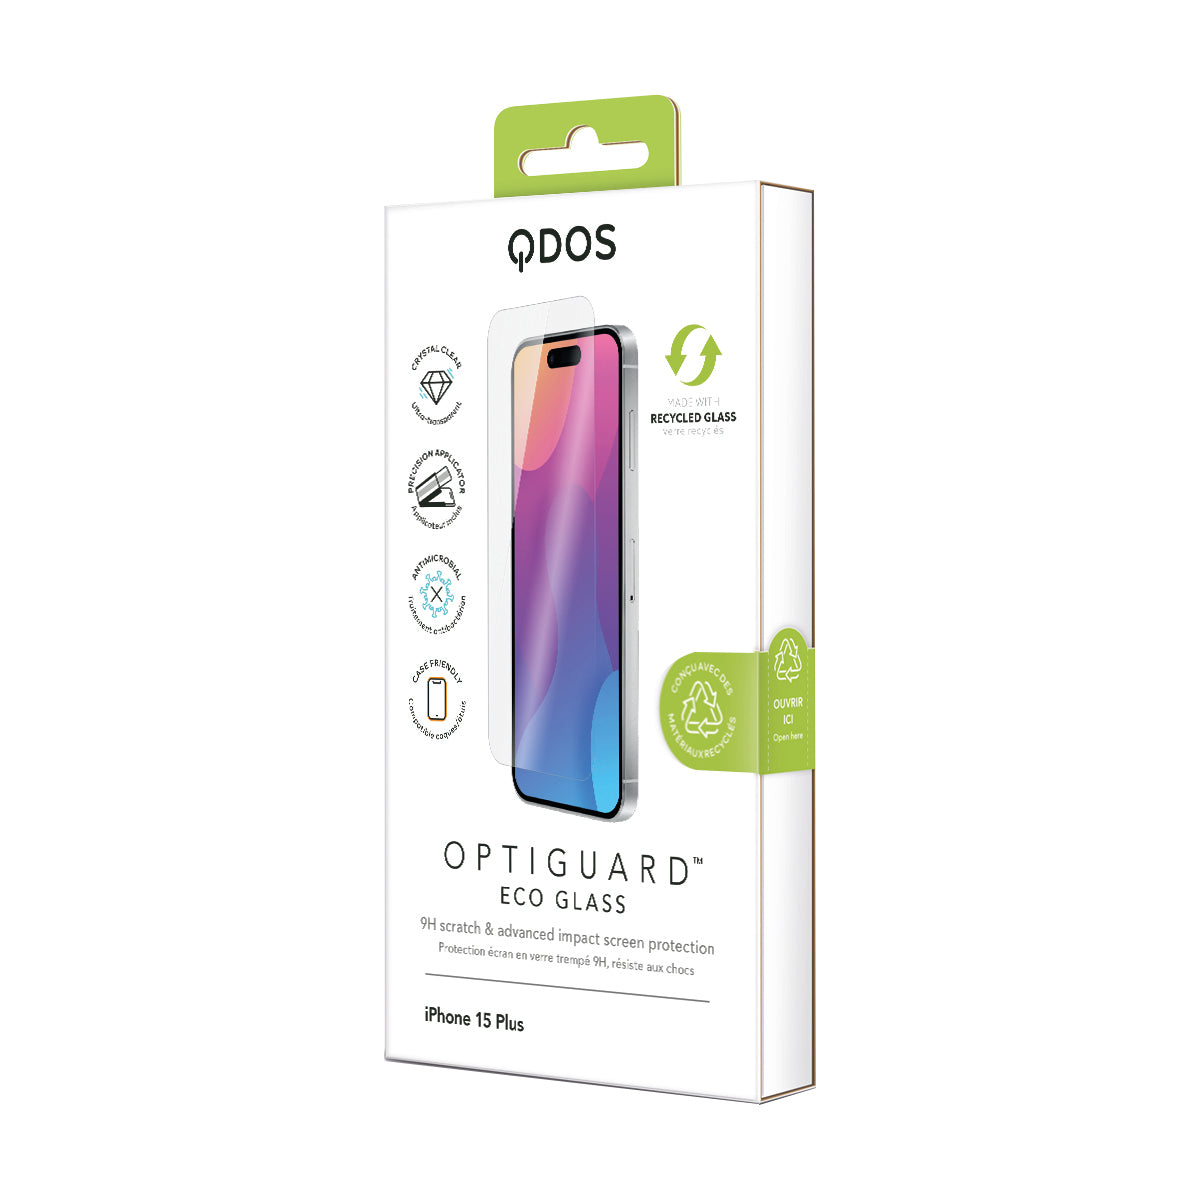 OptiGuard Eco Glass for iPhone 15 Plus